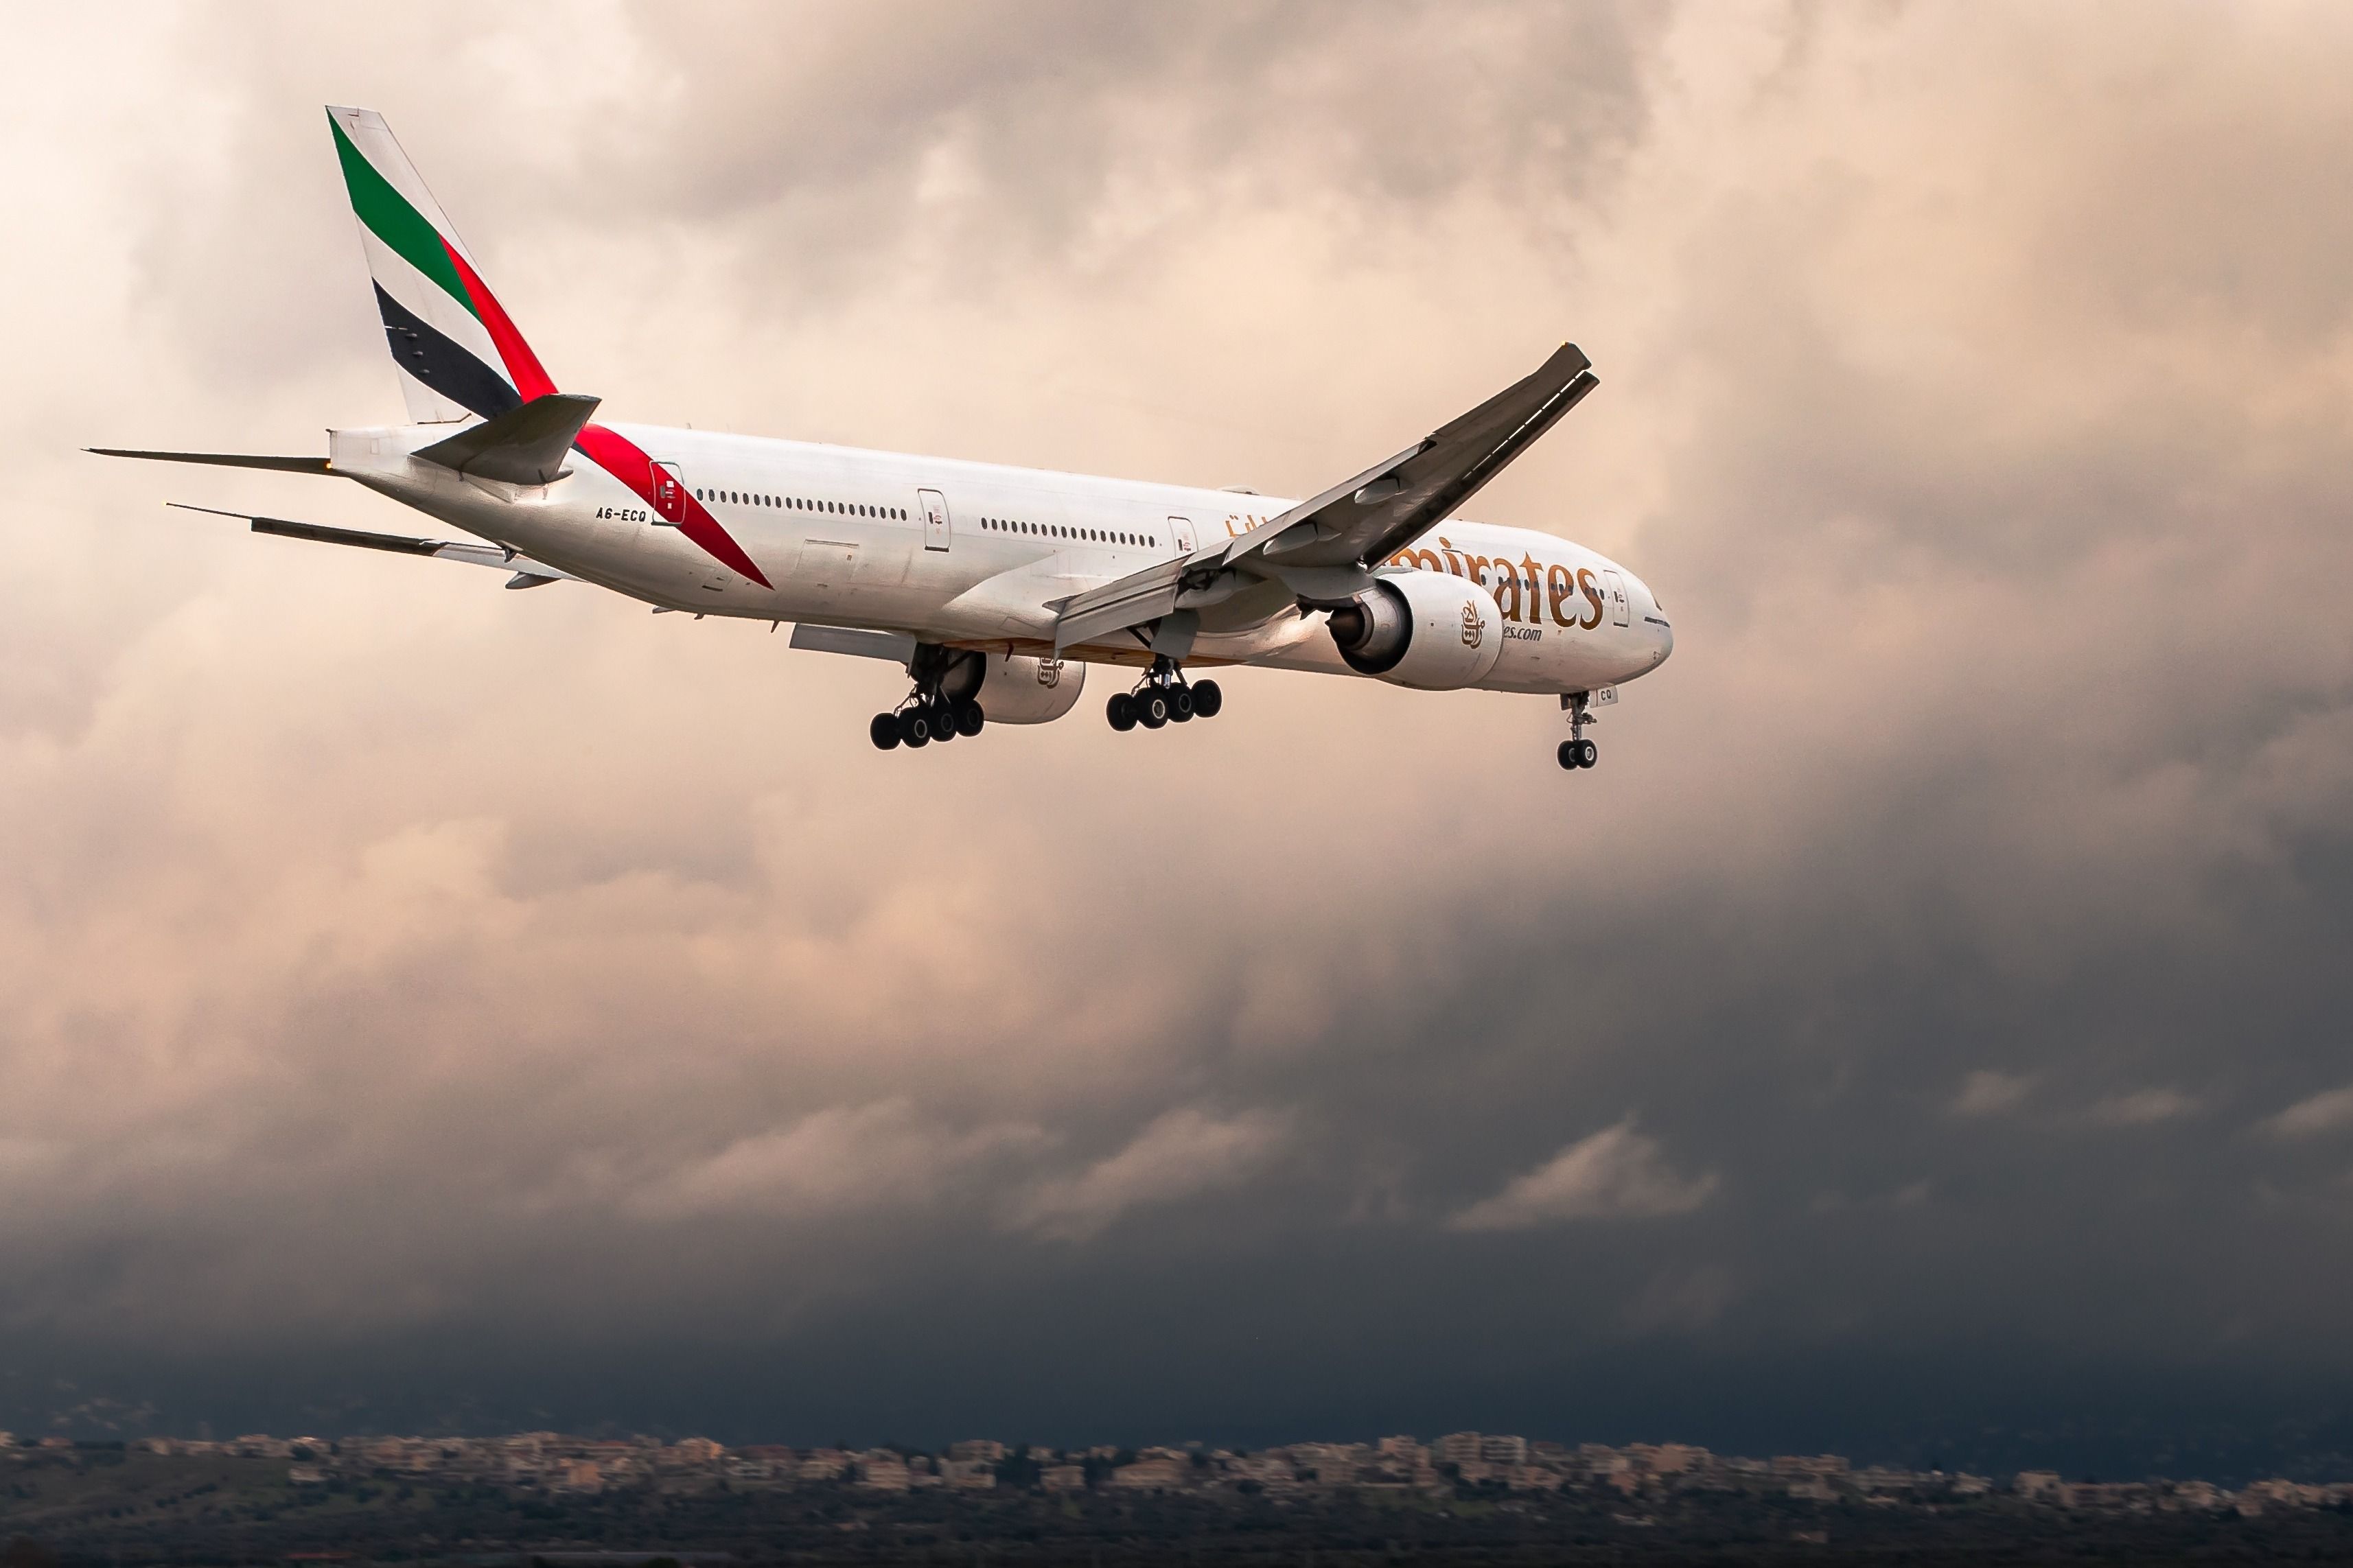 Emirates Boeing 777-300ER landing